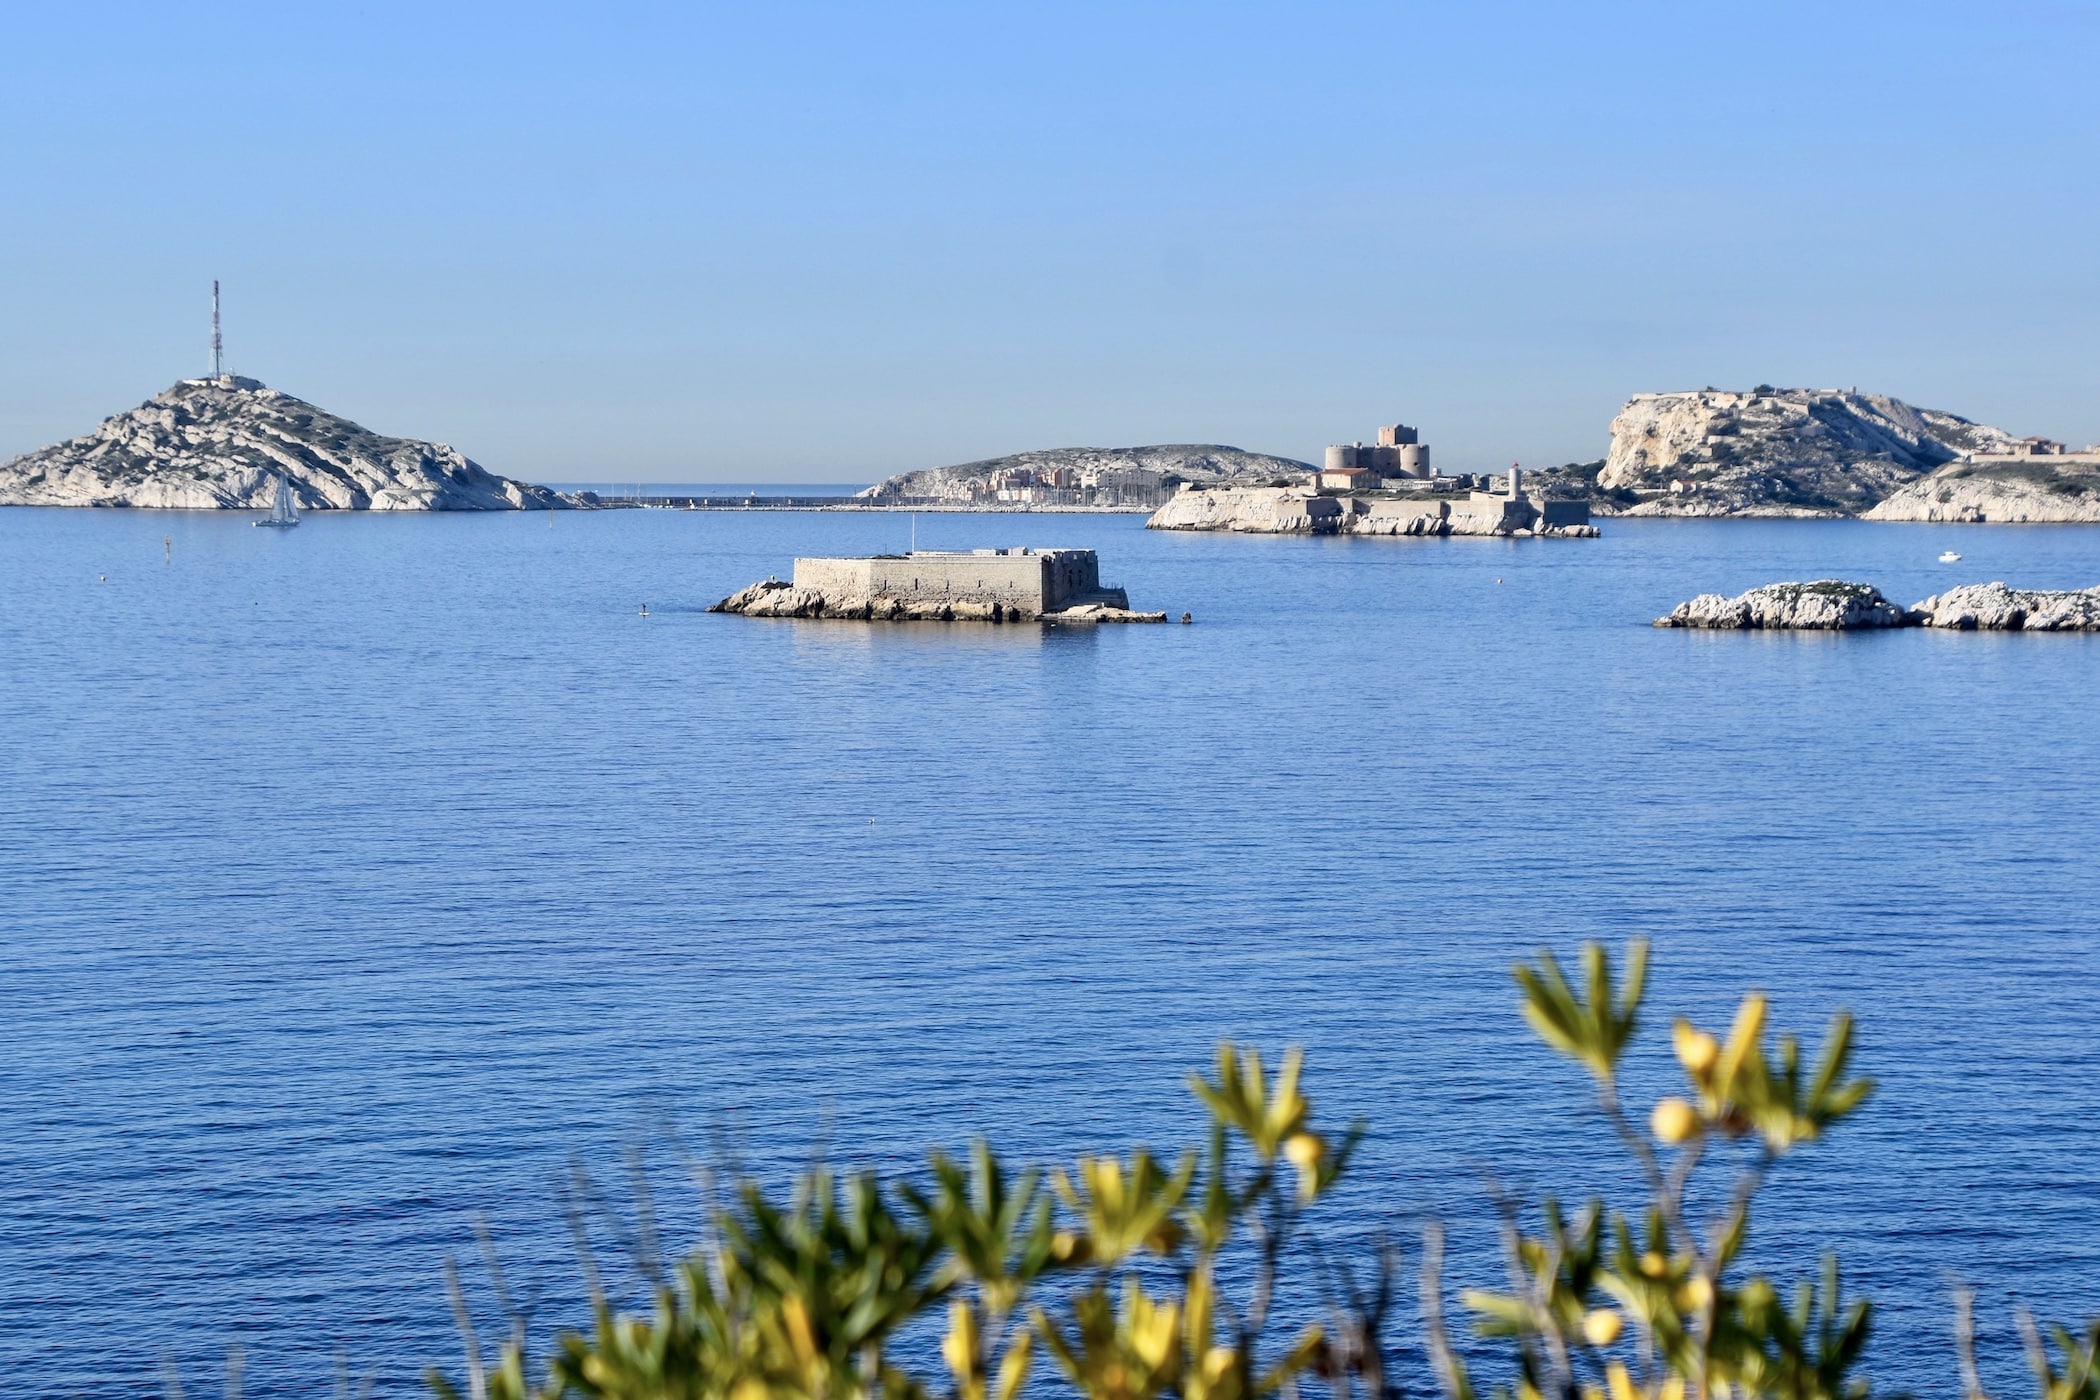 aire marine, Une nouvelle aire marine protégée de 850 hectares dans la baie de Marseille, Made in Marseille